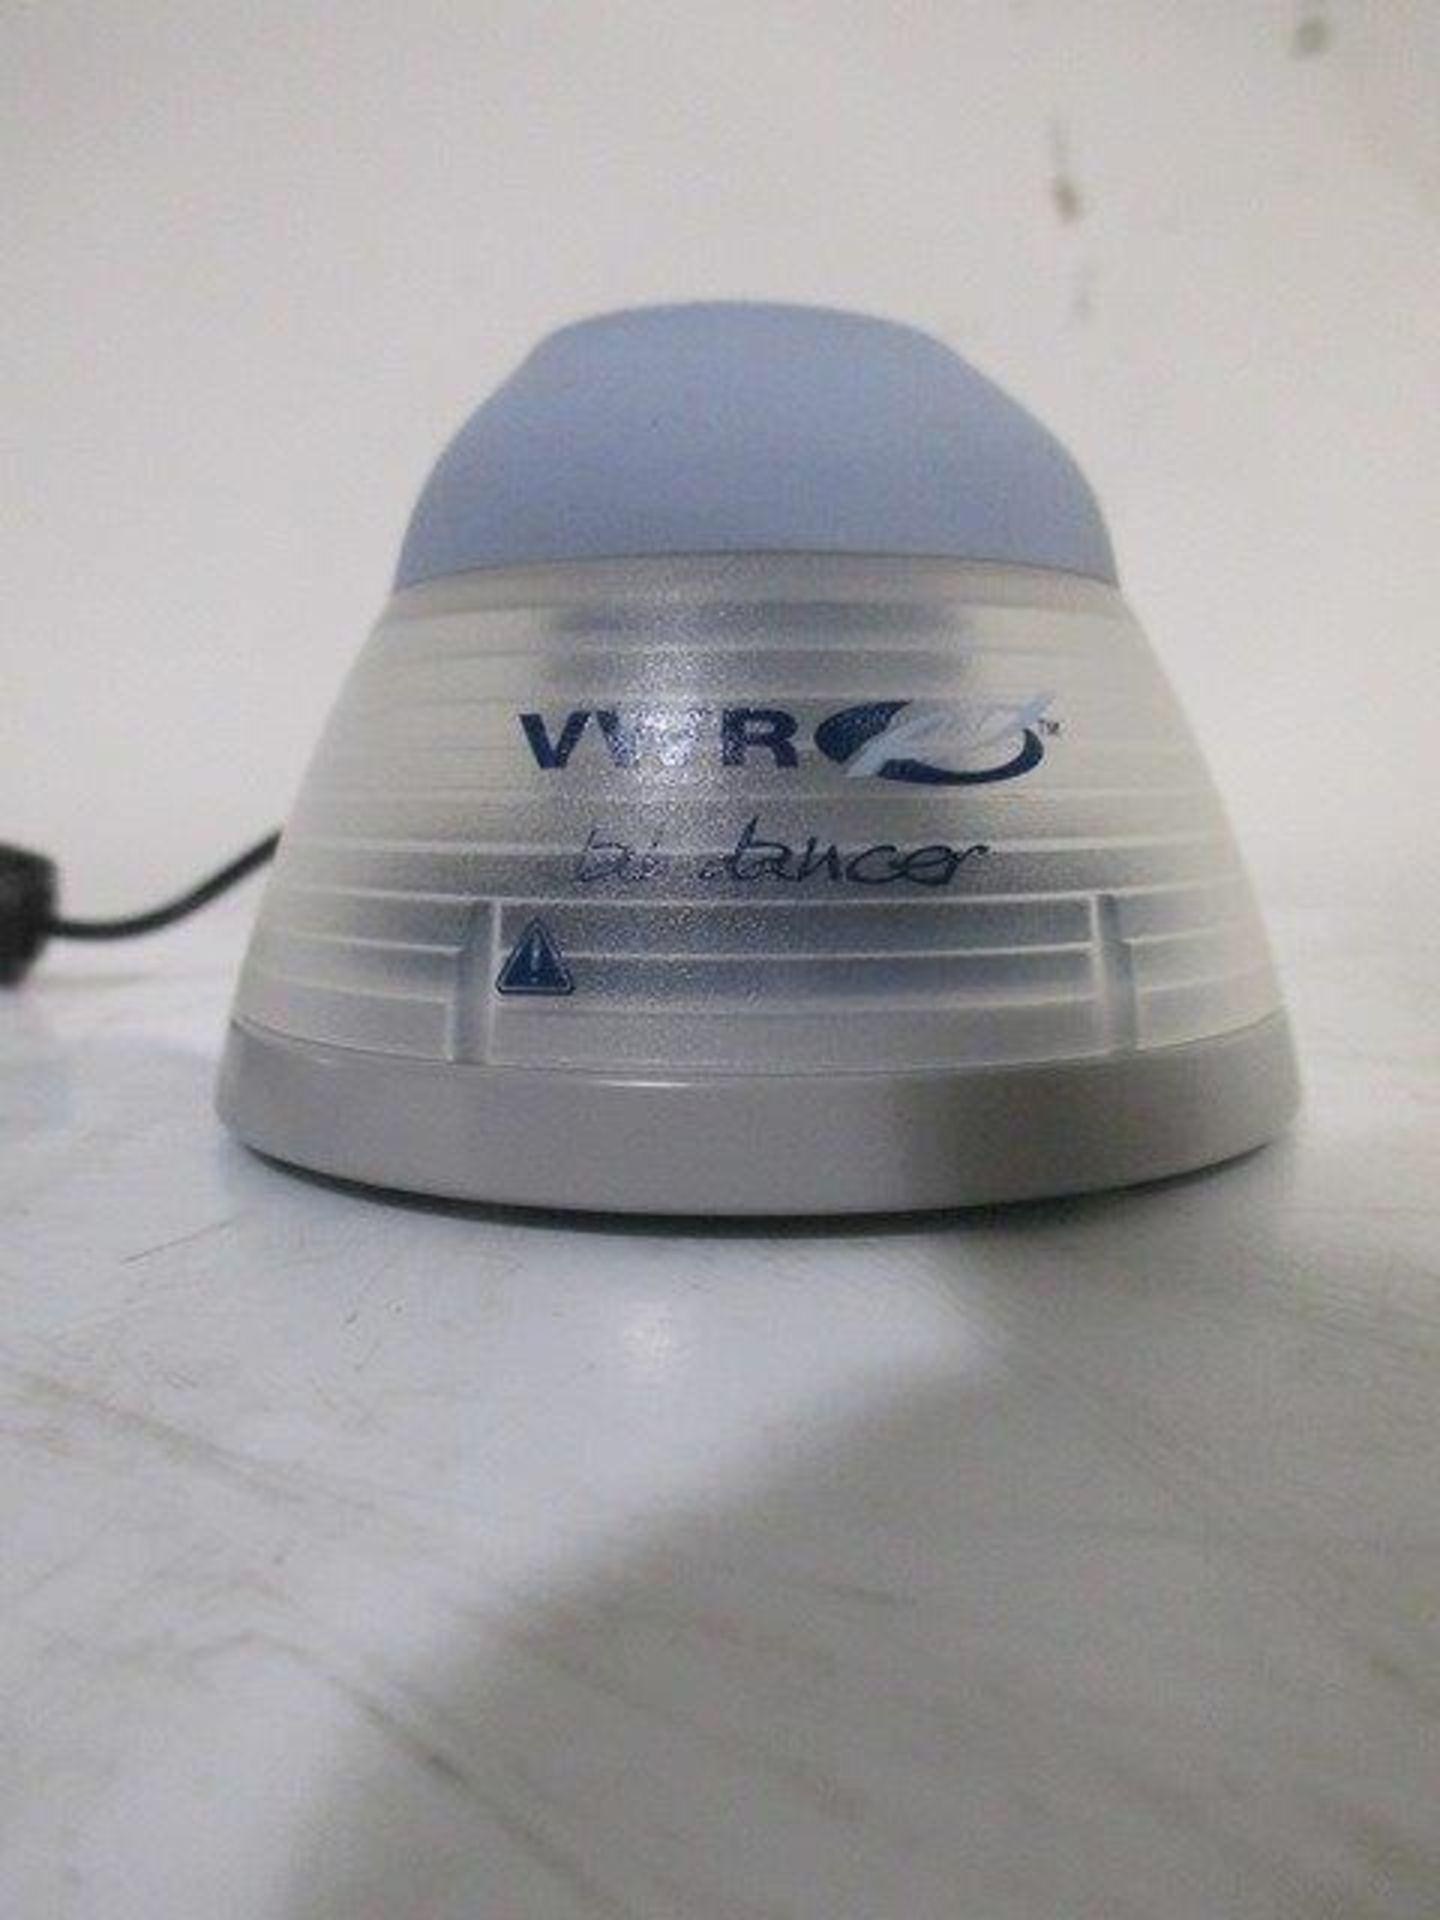 VWR S40 Lab Dancer Mini Vortexer